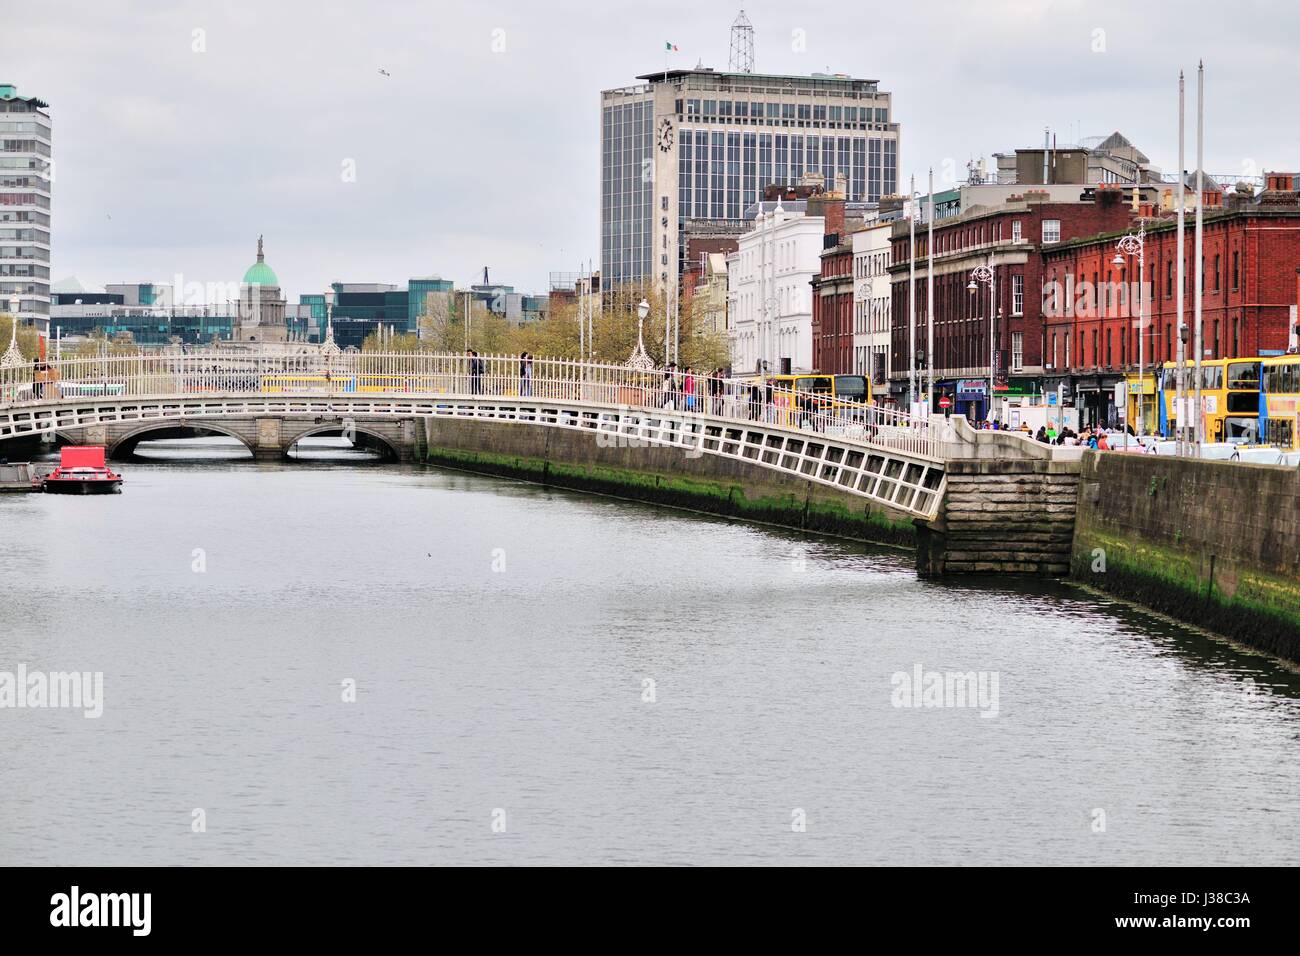 Ha'penny Bridge, noto anche come il Liffey, ponte sul fiume Liffey collega Liffey Street con l'area di Temple Bar. Dublino, Irlanda. Foto Stock